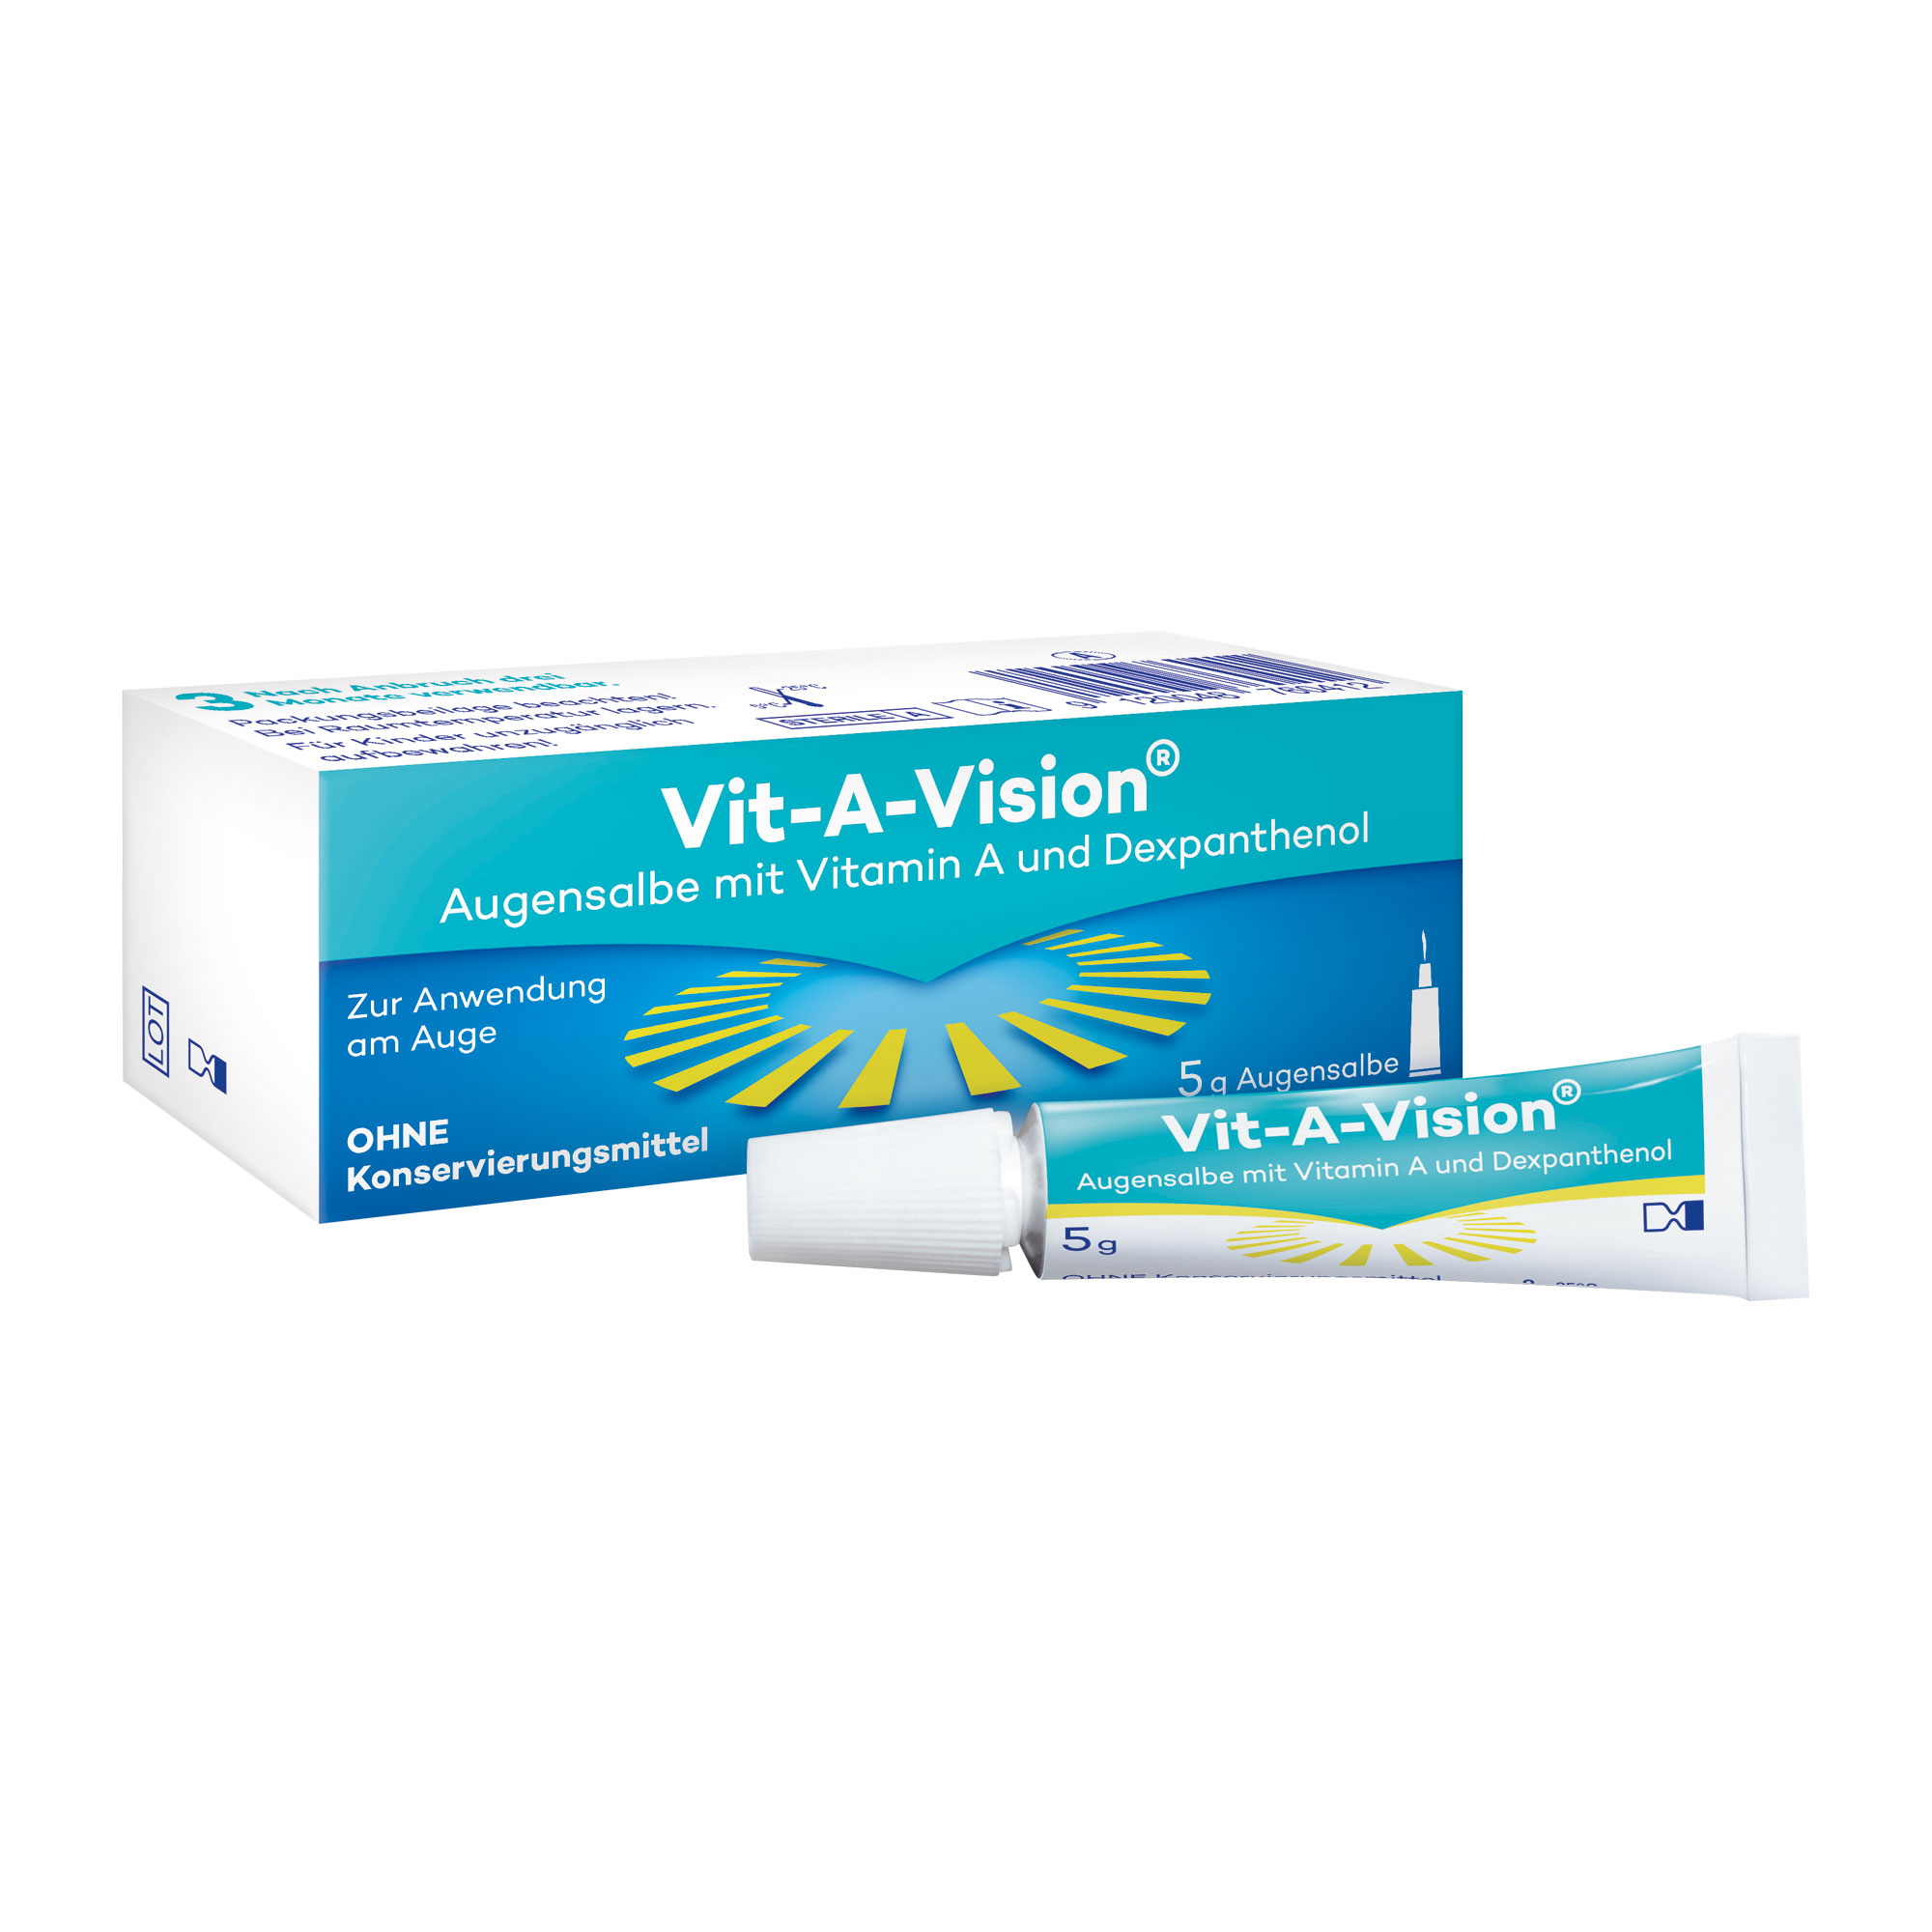 Augensalbe mit Vitamin A, Vitamin E und Dexpanthenol ohne Konservierungsmittel.